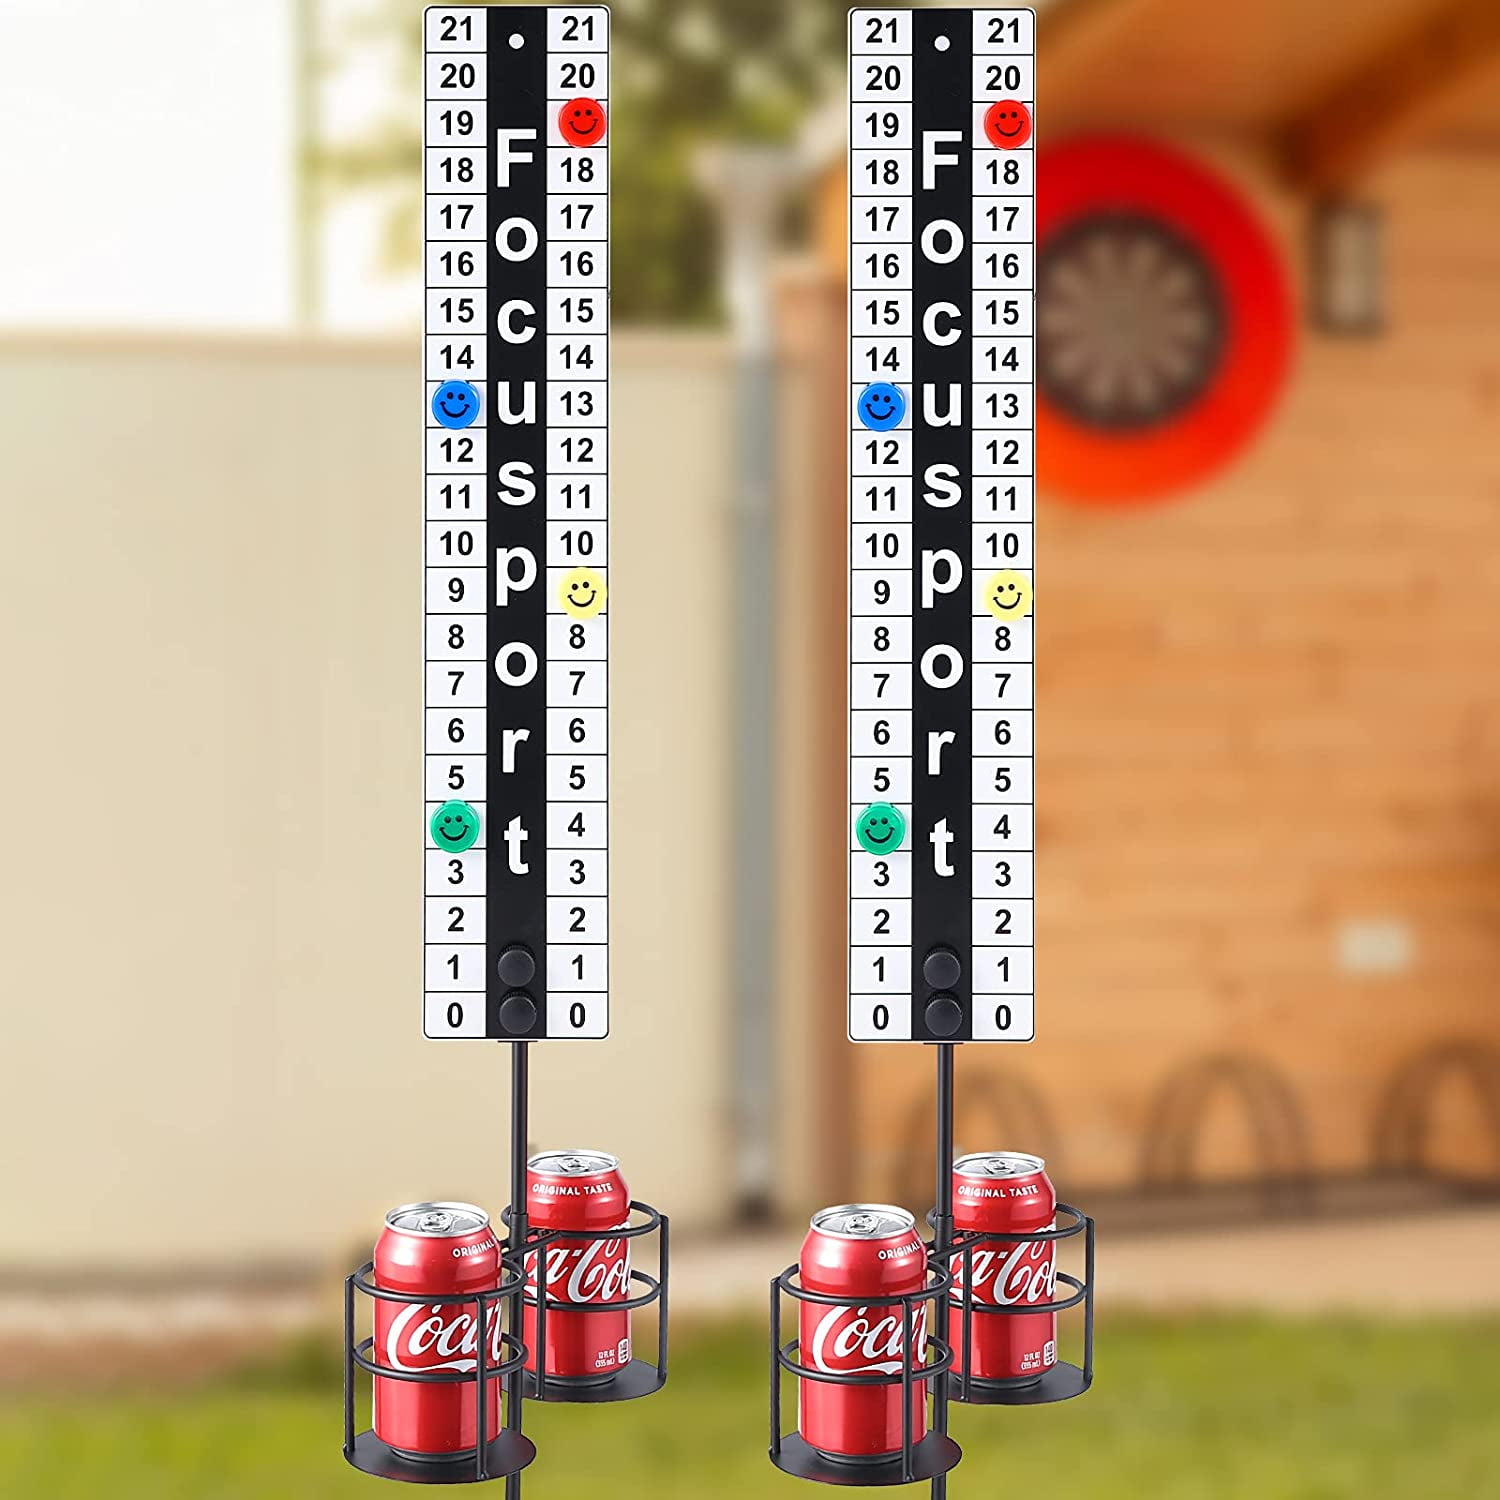 Focusport Cornhole Scoreboard With Drink Holder Metal Magnetic Score